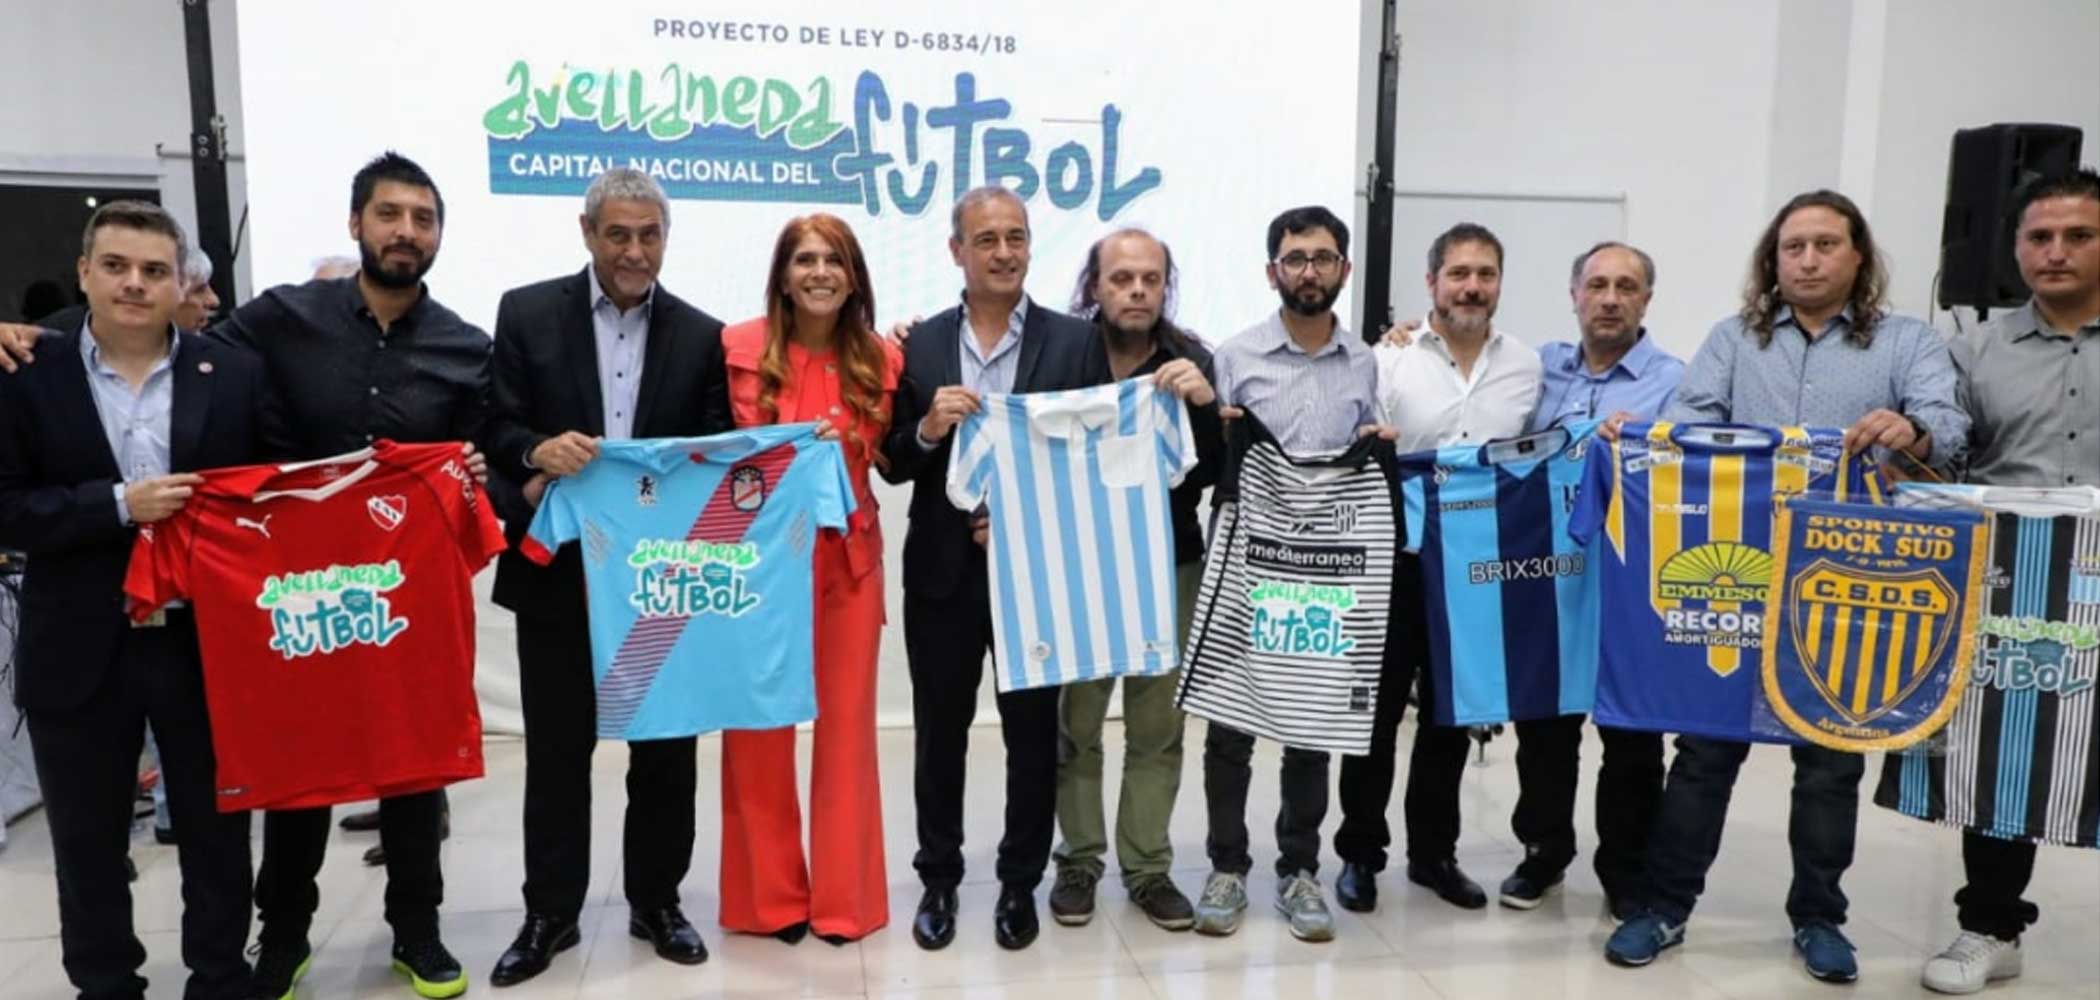 Independiente y Racing apoyaron el proyecto de ley “Avellaneda, Capital Nacional del Fútbol”